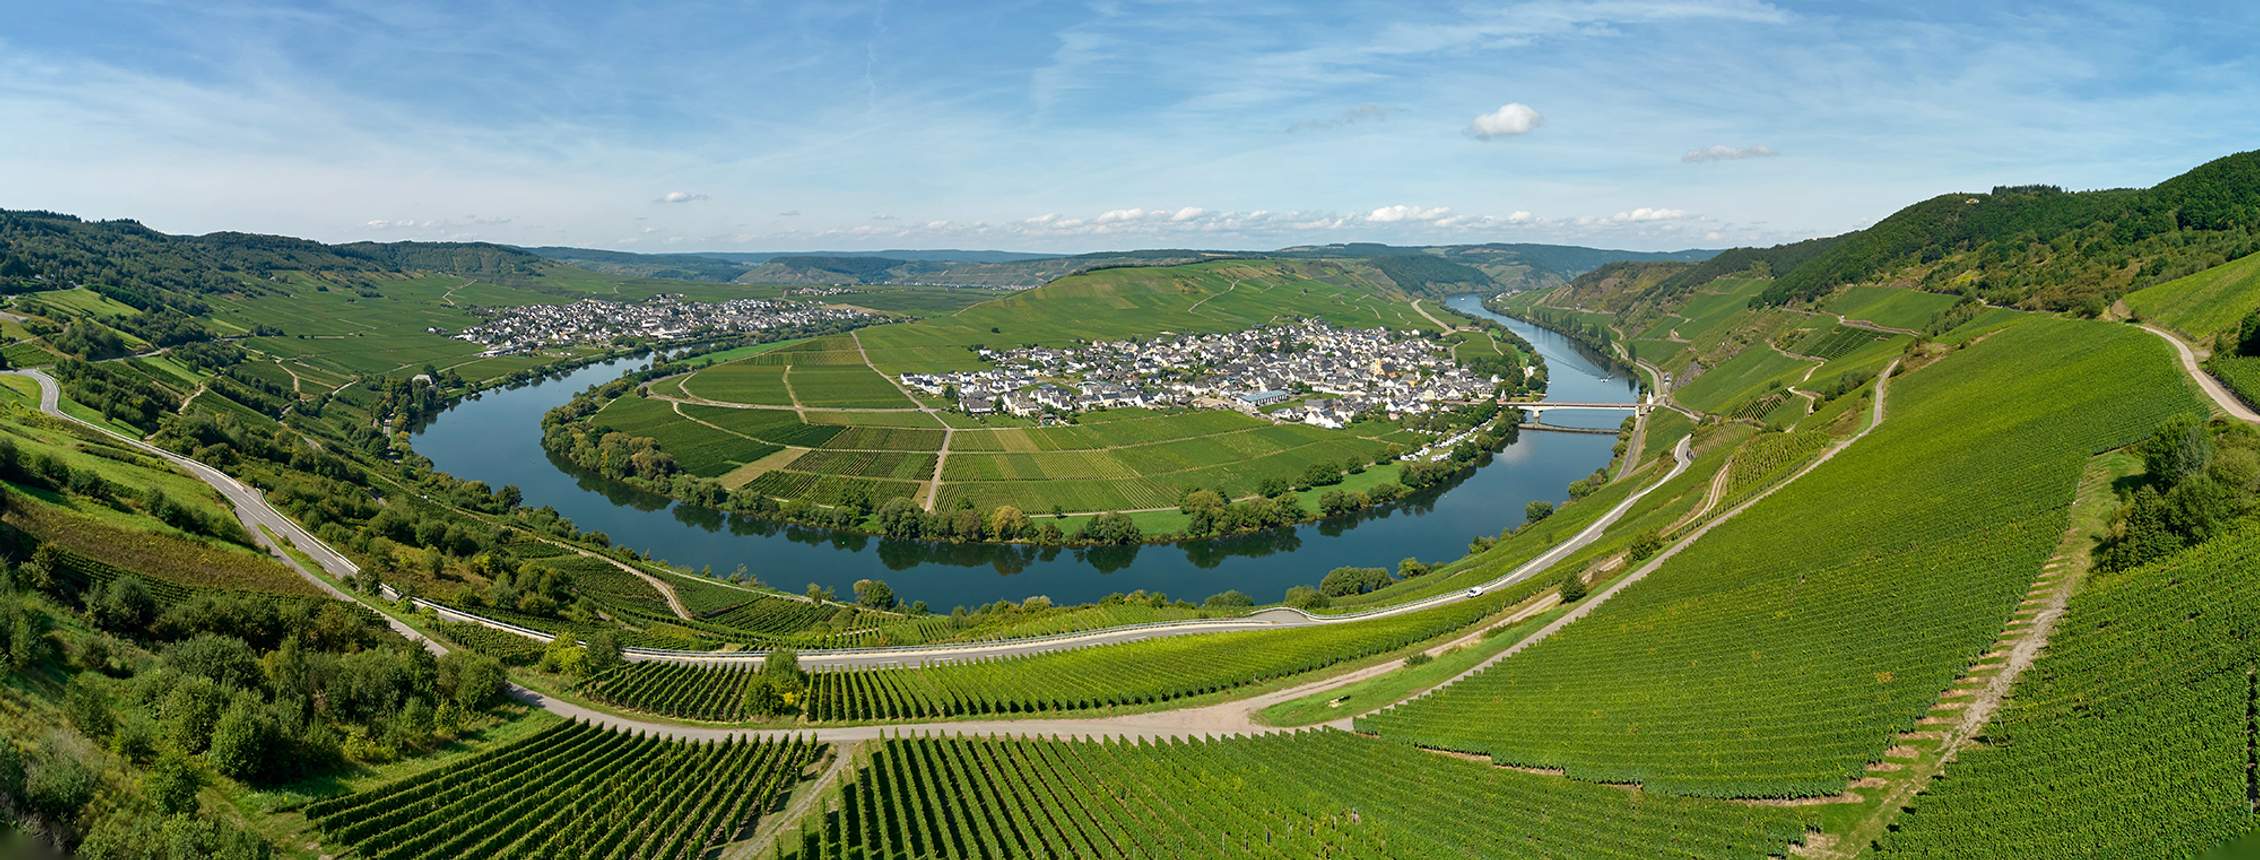 Mosel - Römische Weinstrasse in Rheinland-Pfalz